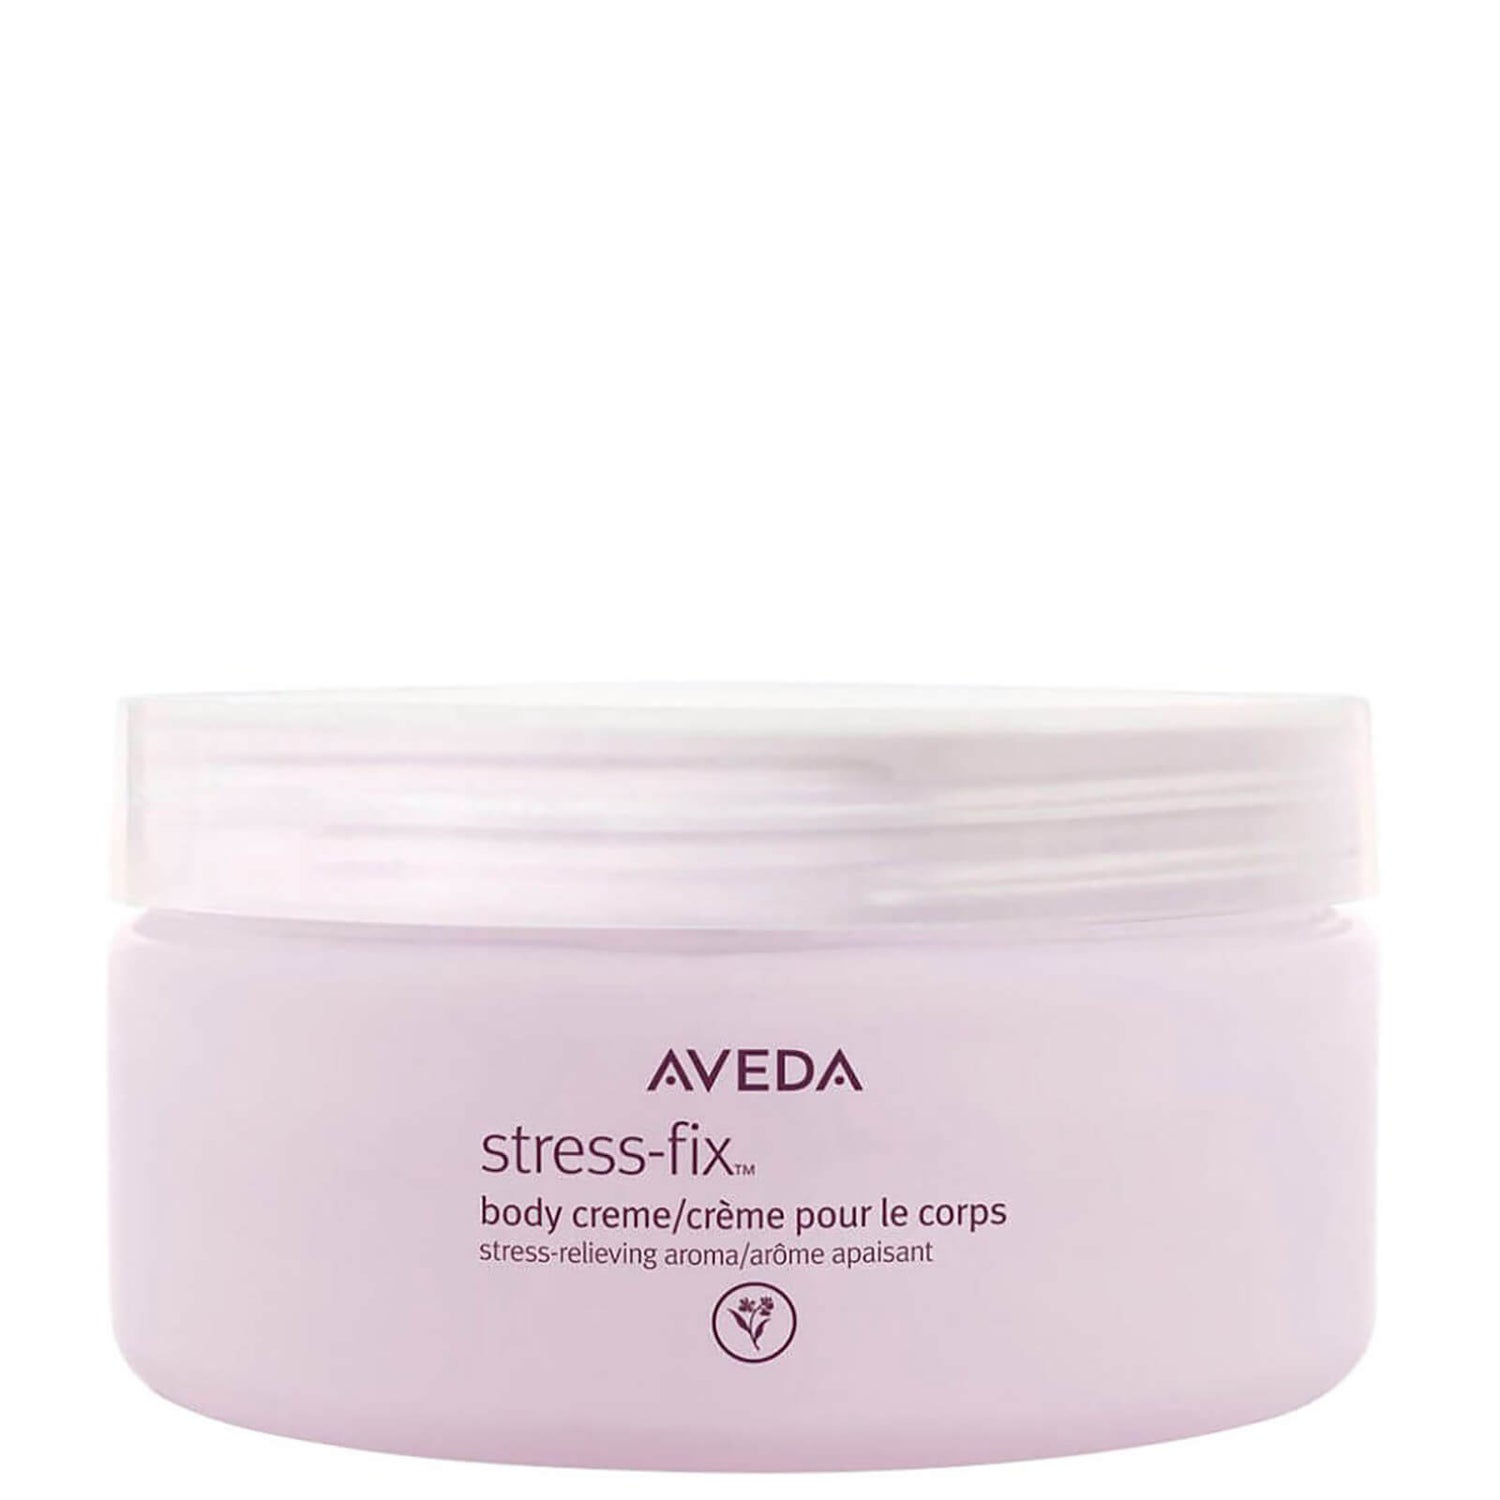 Crema corporal Aveda Stress-Fix 200ml